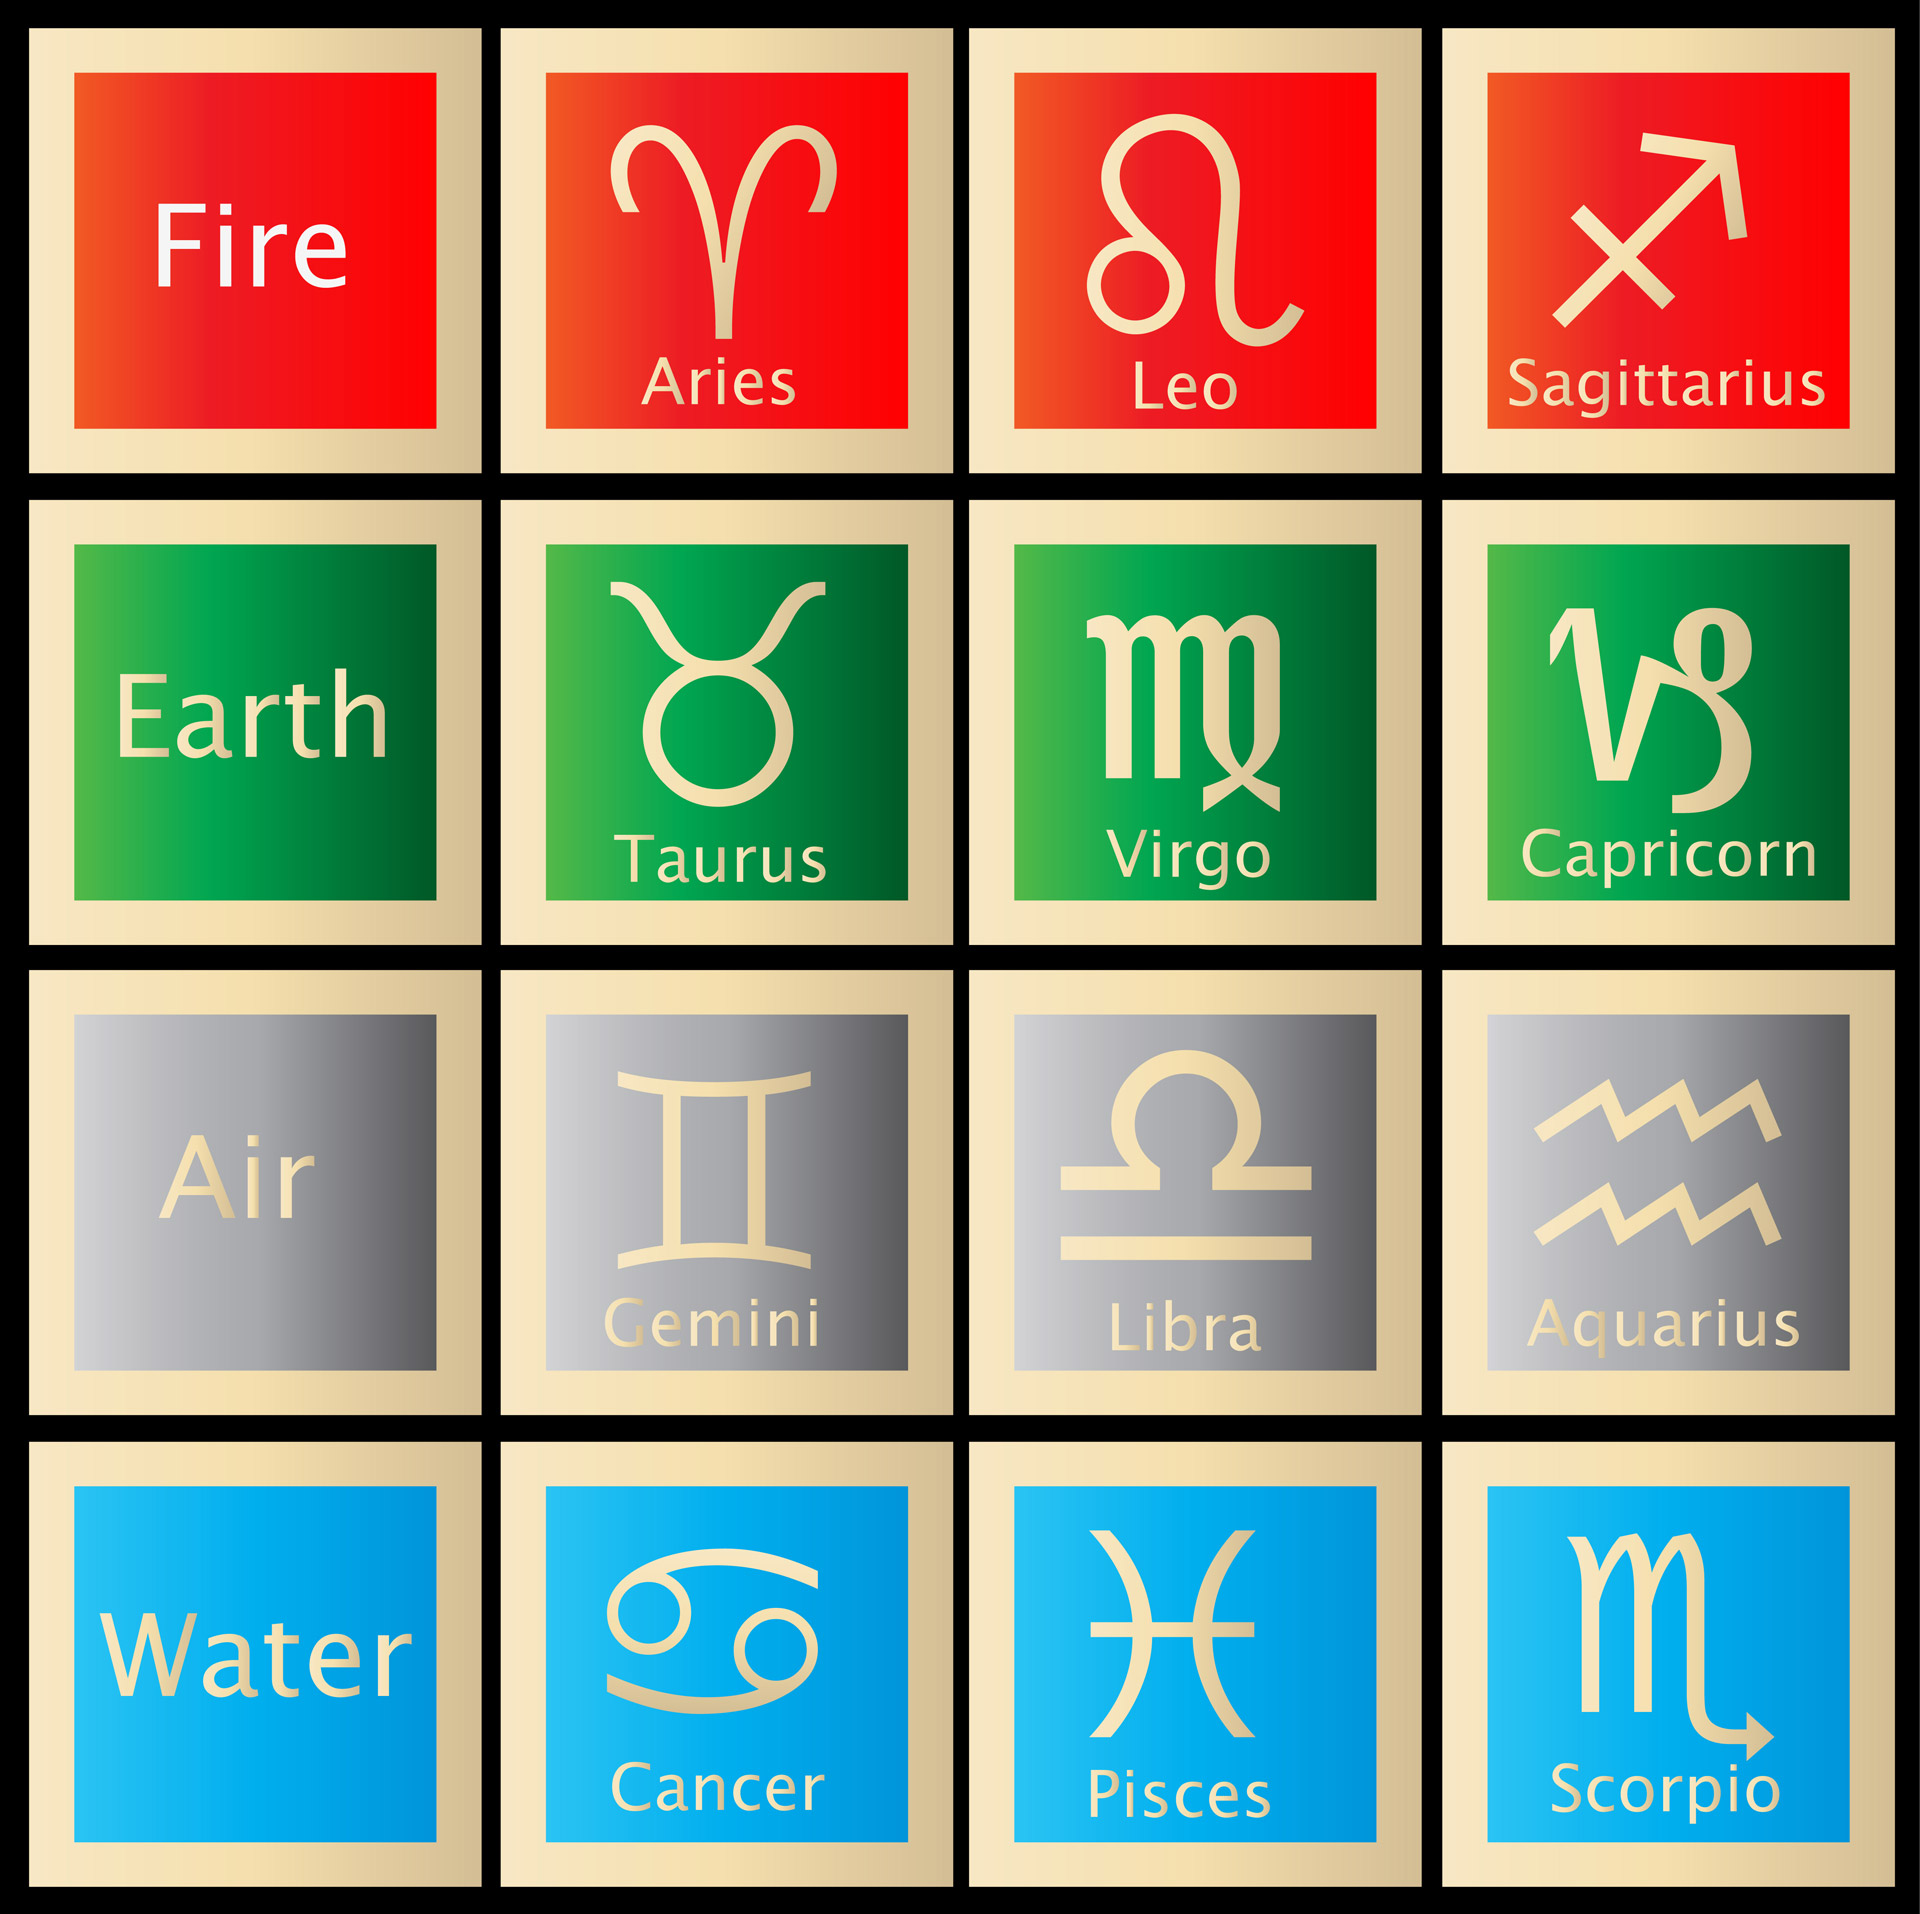 Astrologija & Nbsp,  Ženklai,  Gimimo & Nbsp,  Ženklai,  Zodiako,  Astrologija,  Simboliai,  Ženklai,  Aries,  Taurus